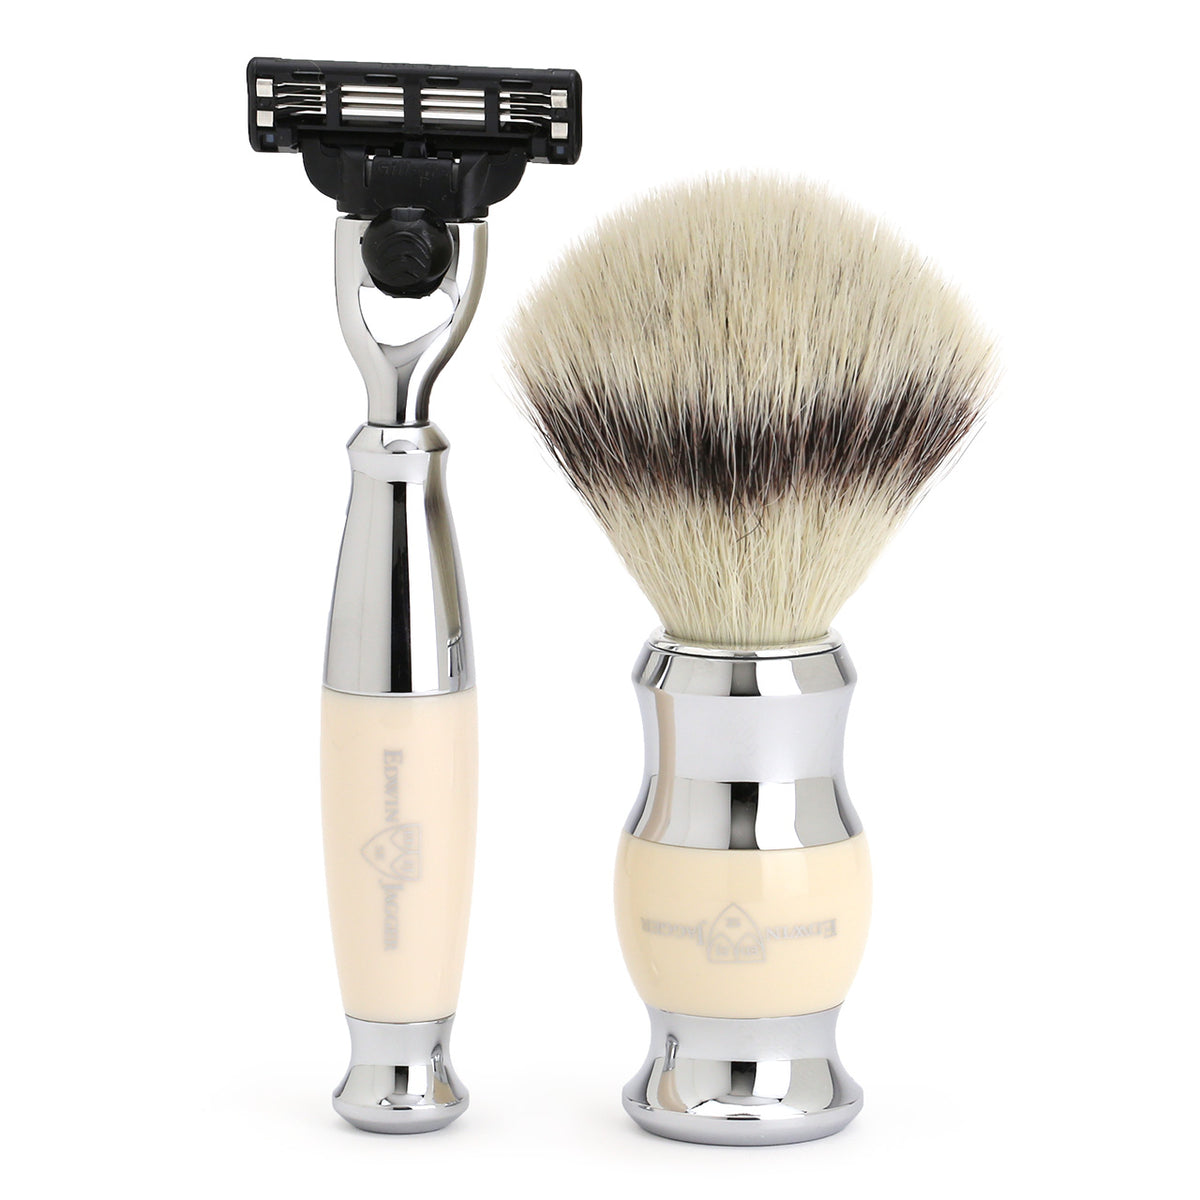 Mach3 Razor and Cruelty-Free Shaving Brush in Imitation Ivory